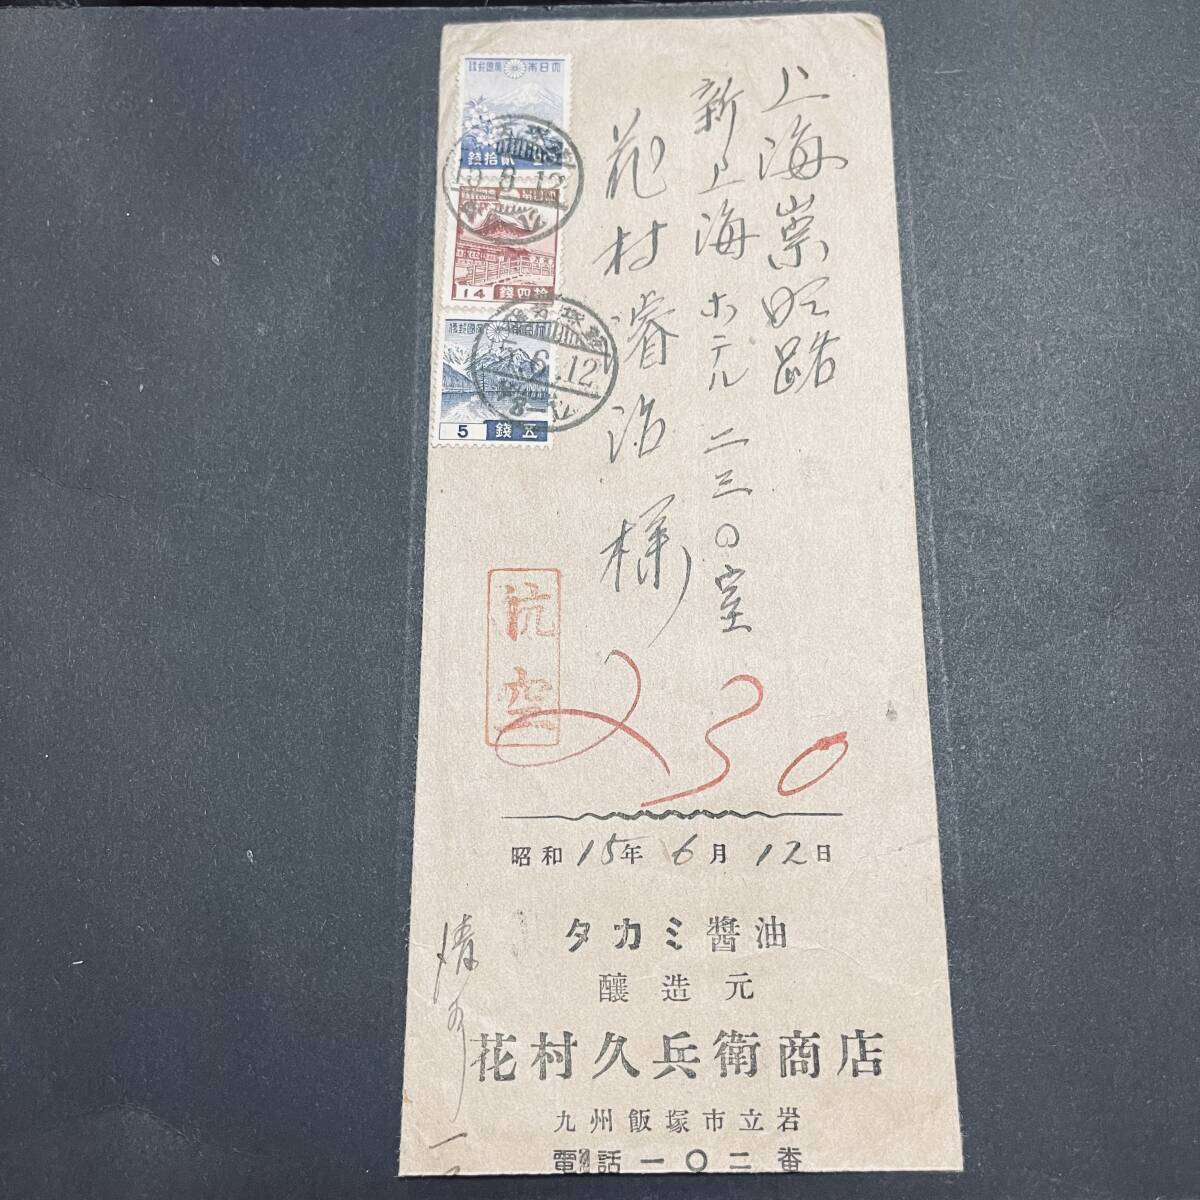 1940年 中国 上海宛航空使用例 一次昭和5銭14銭20銭貼 九州飯塚発信 上海着印 エンタイア_画像1